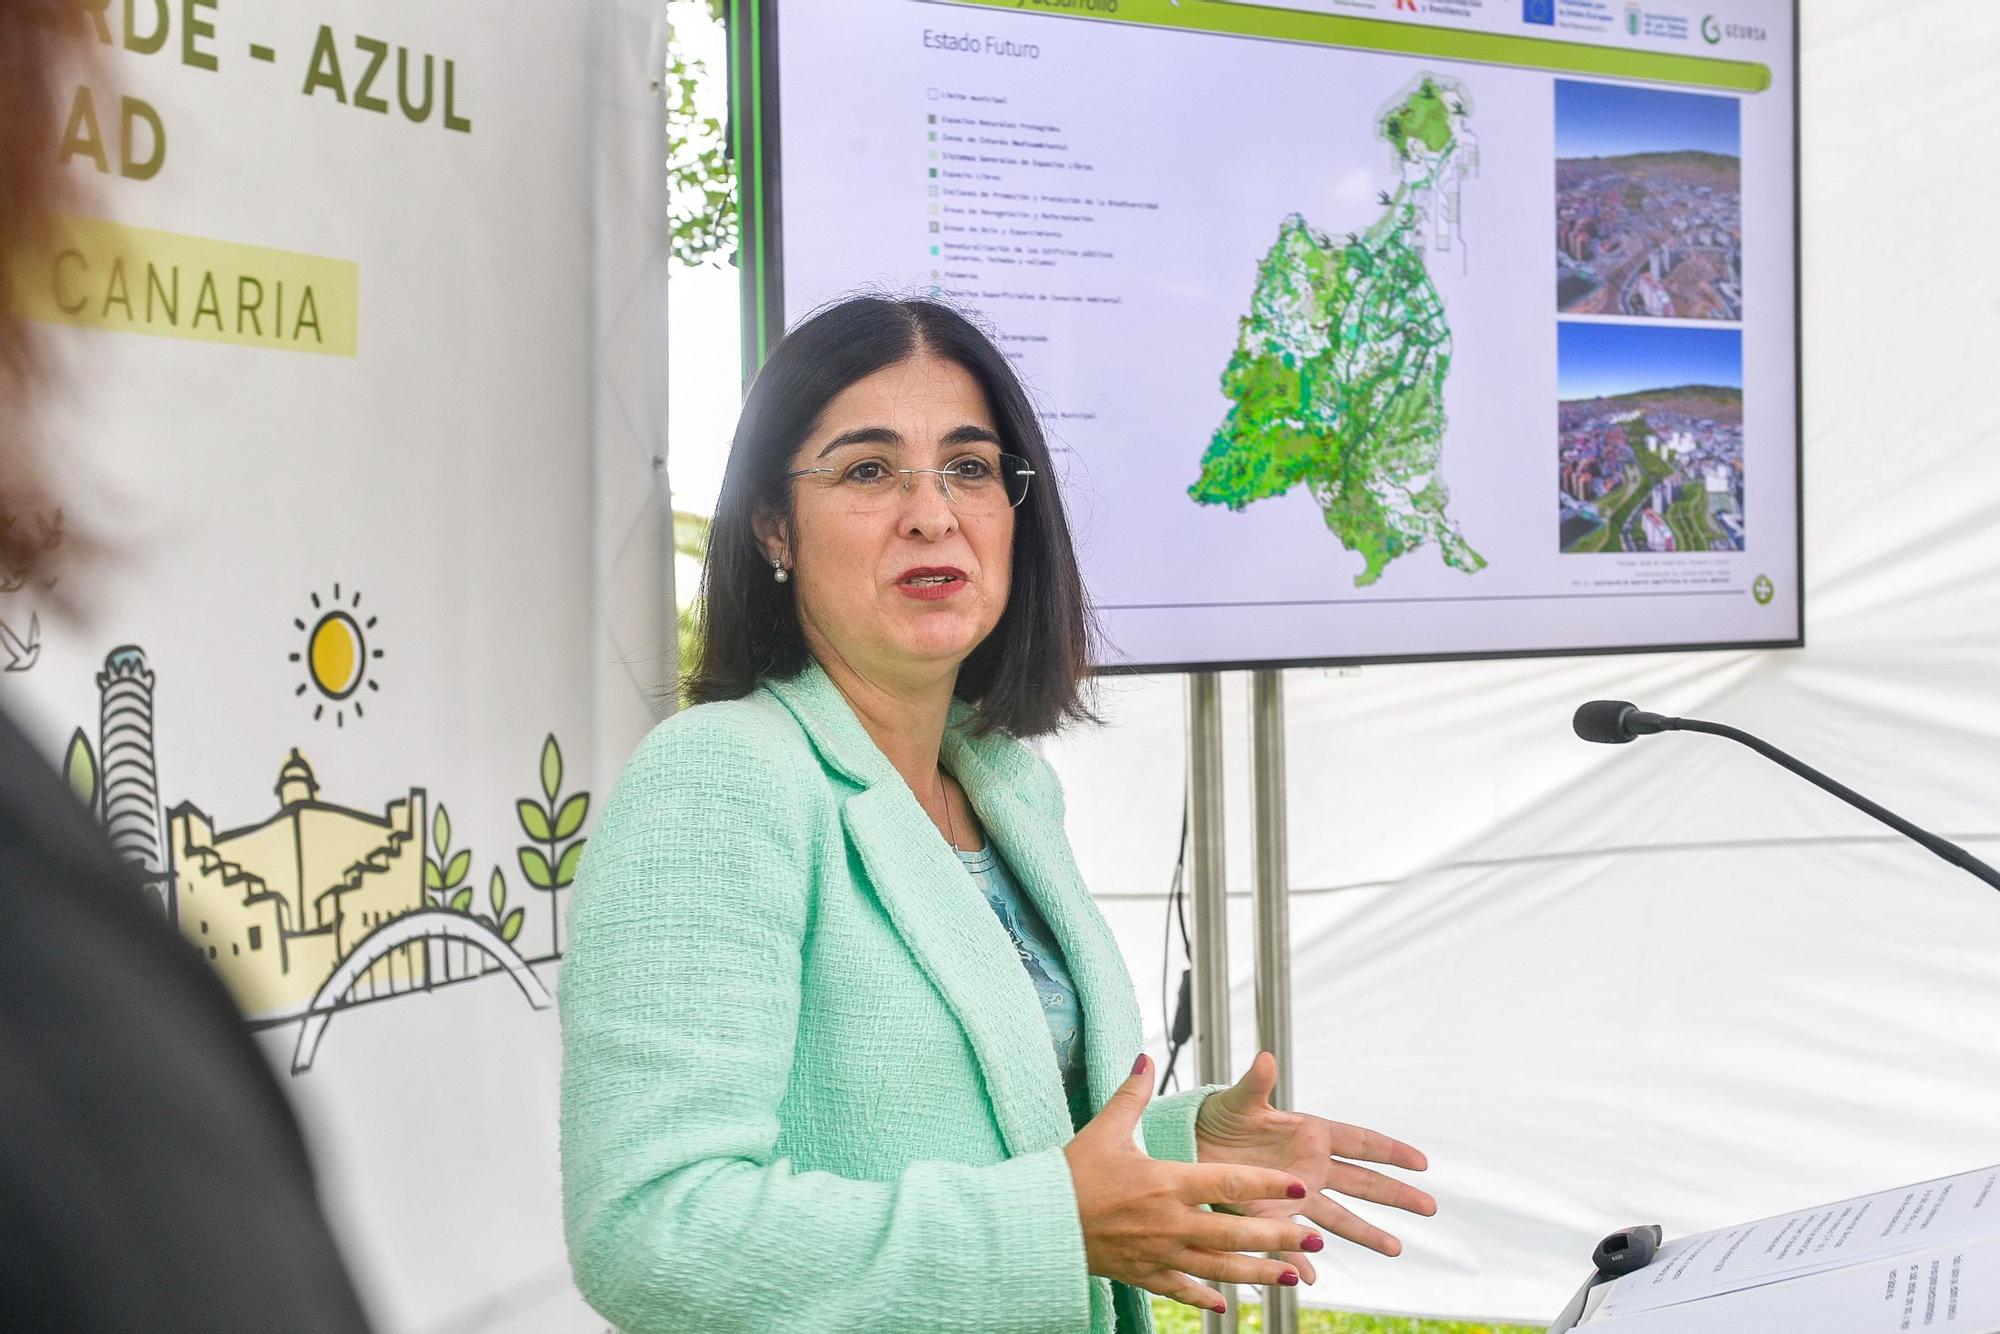 Plan Director de Infraestructuras Verde-Azul y Biodiversidad de Las Palmas de Gran Canaria